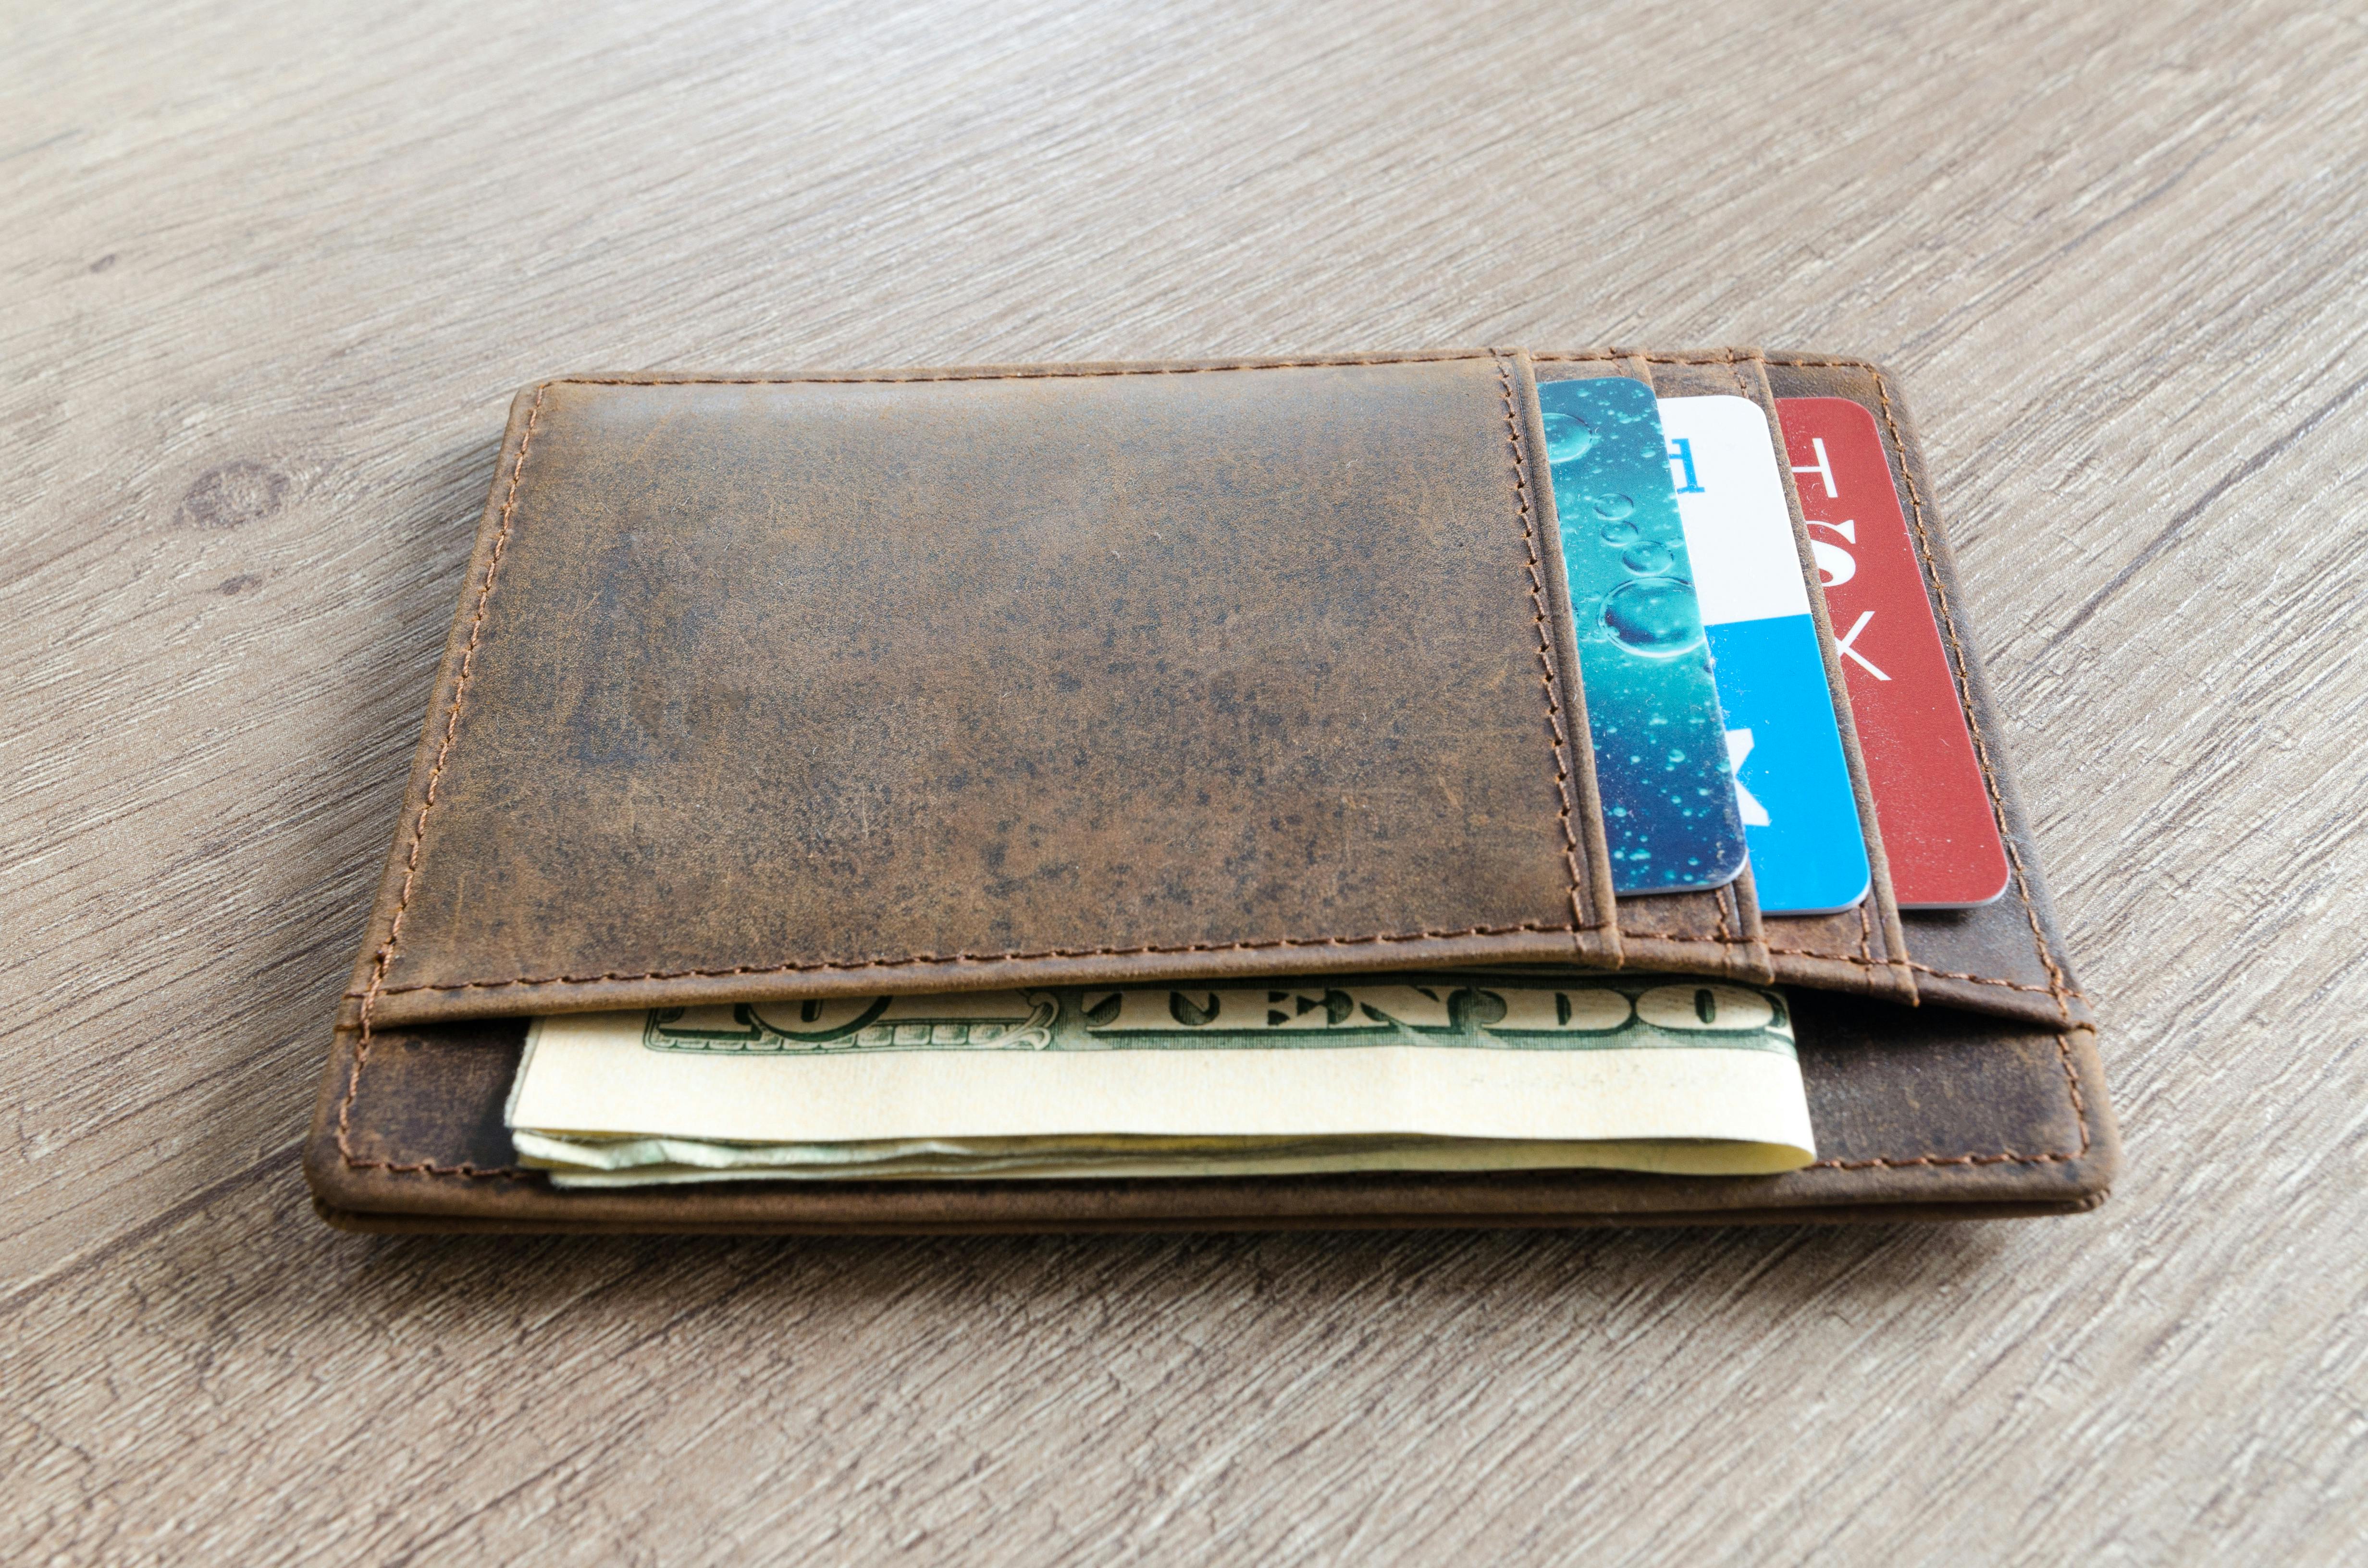 A wallet | Source: Pexels